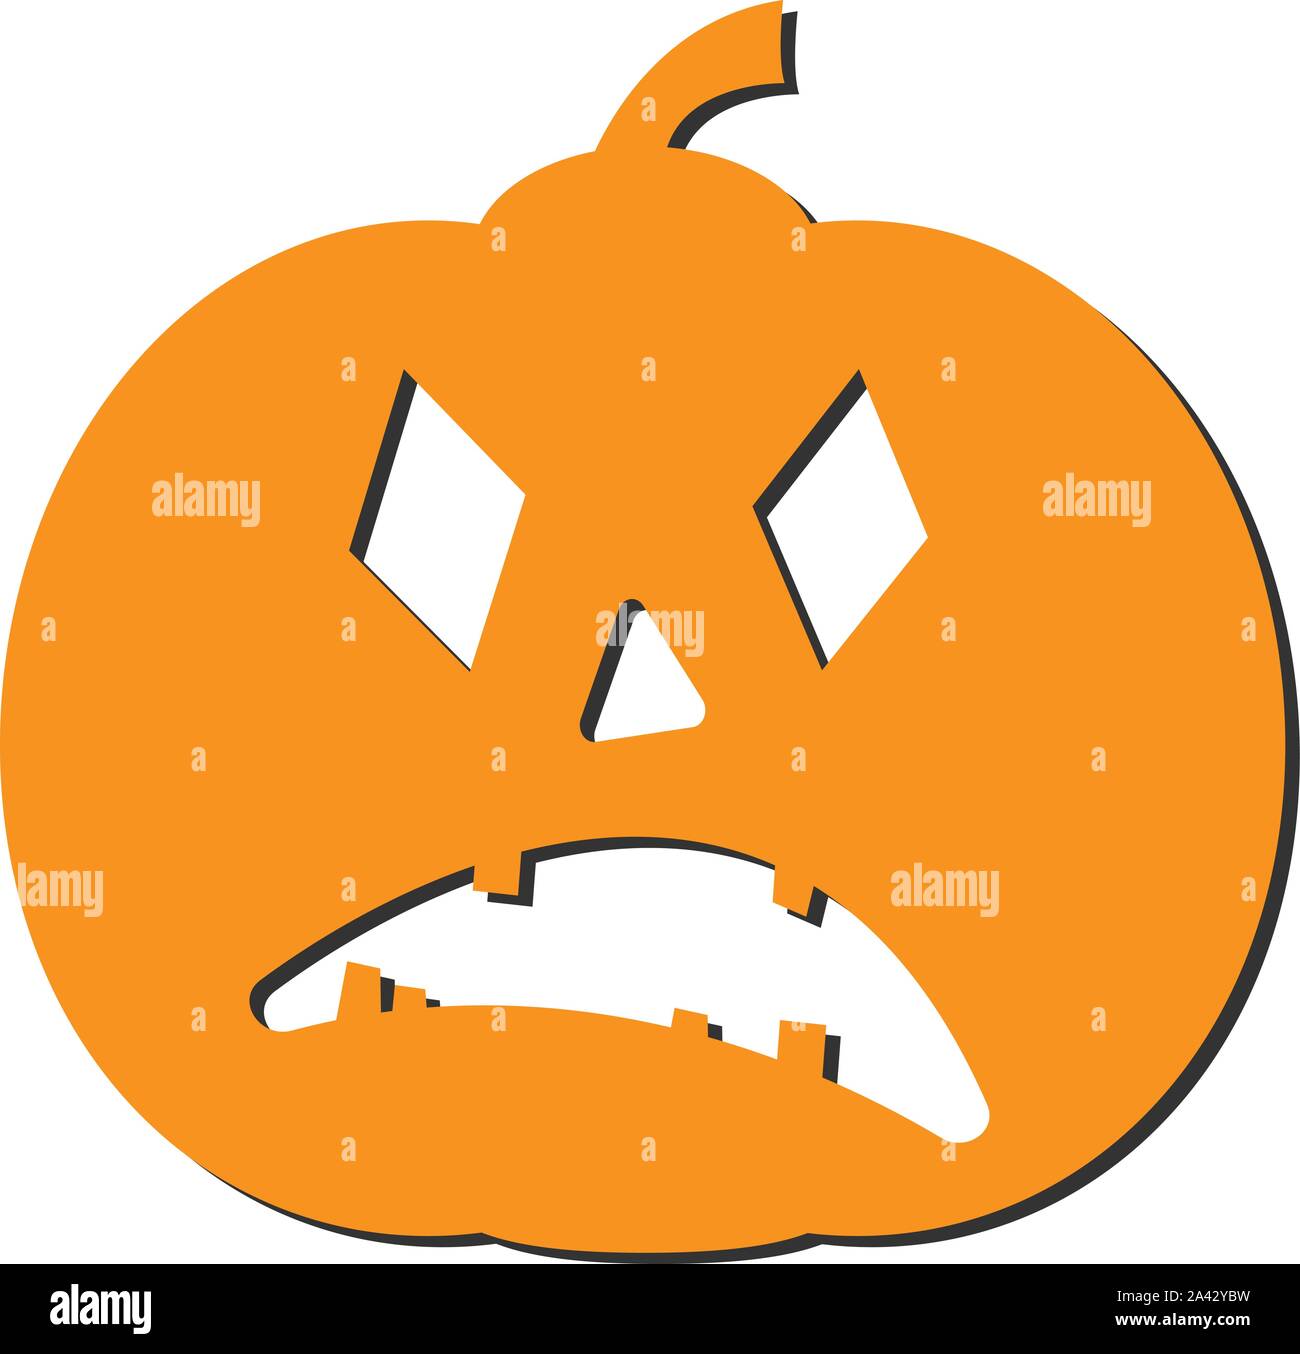 Halloween jack-o-lantern pumpkin isolated on white vector illustration Illustration de Vecteur